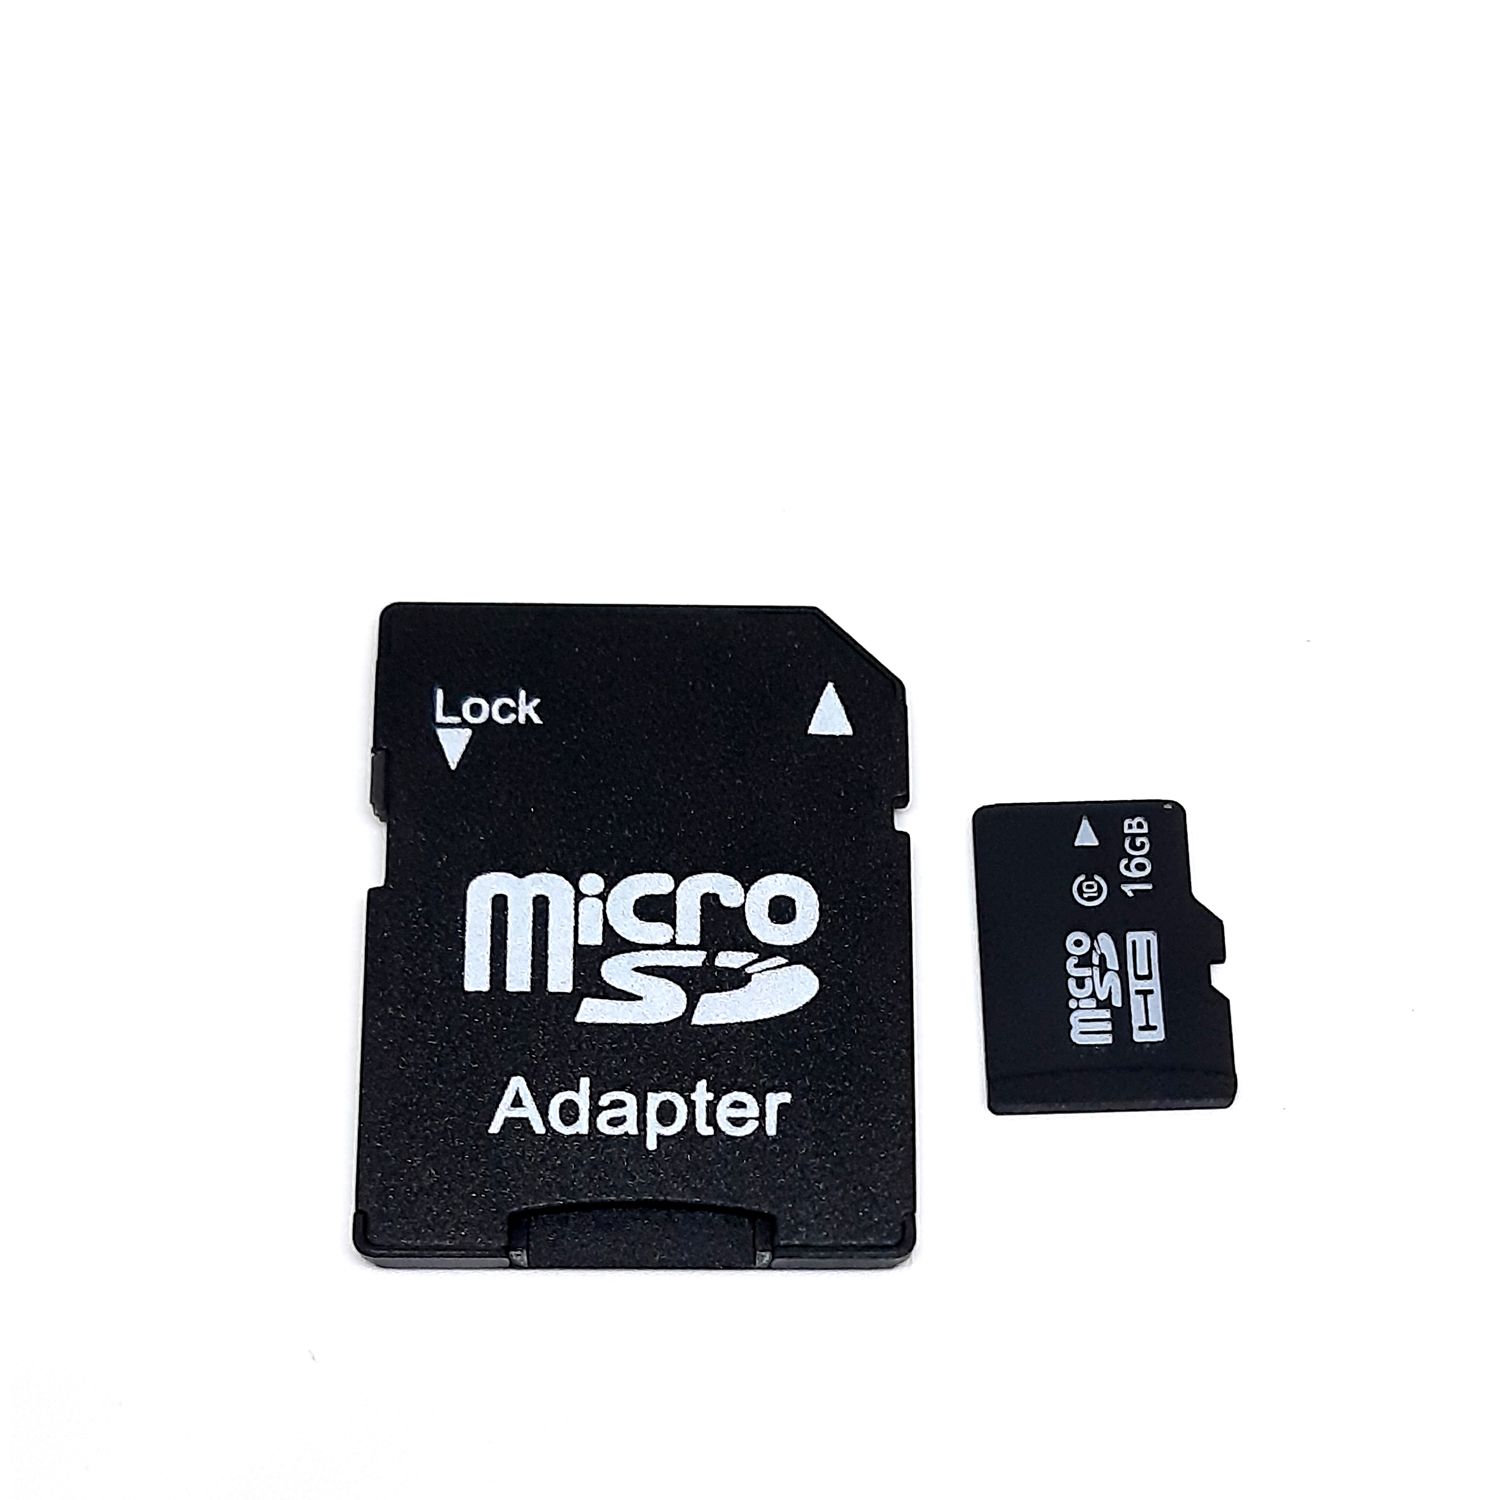 Флешка микро сд цена. Флешка микро СД 16. Микро СД флешки для Sony. Адаптер для флешки MICROSD. Е токен на микро флешке.